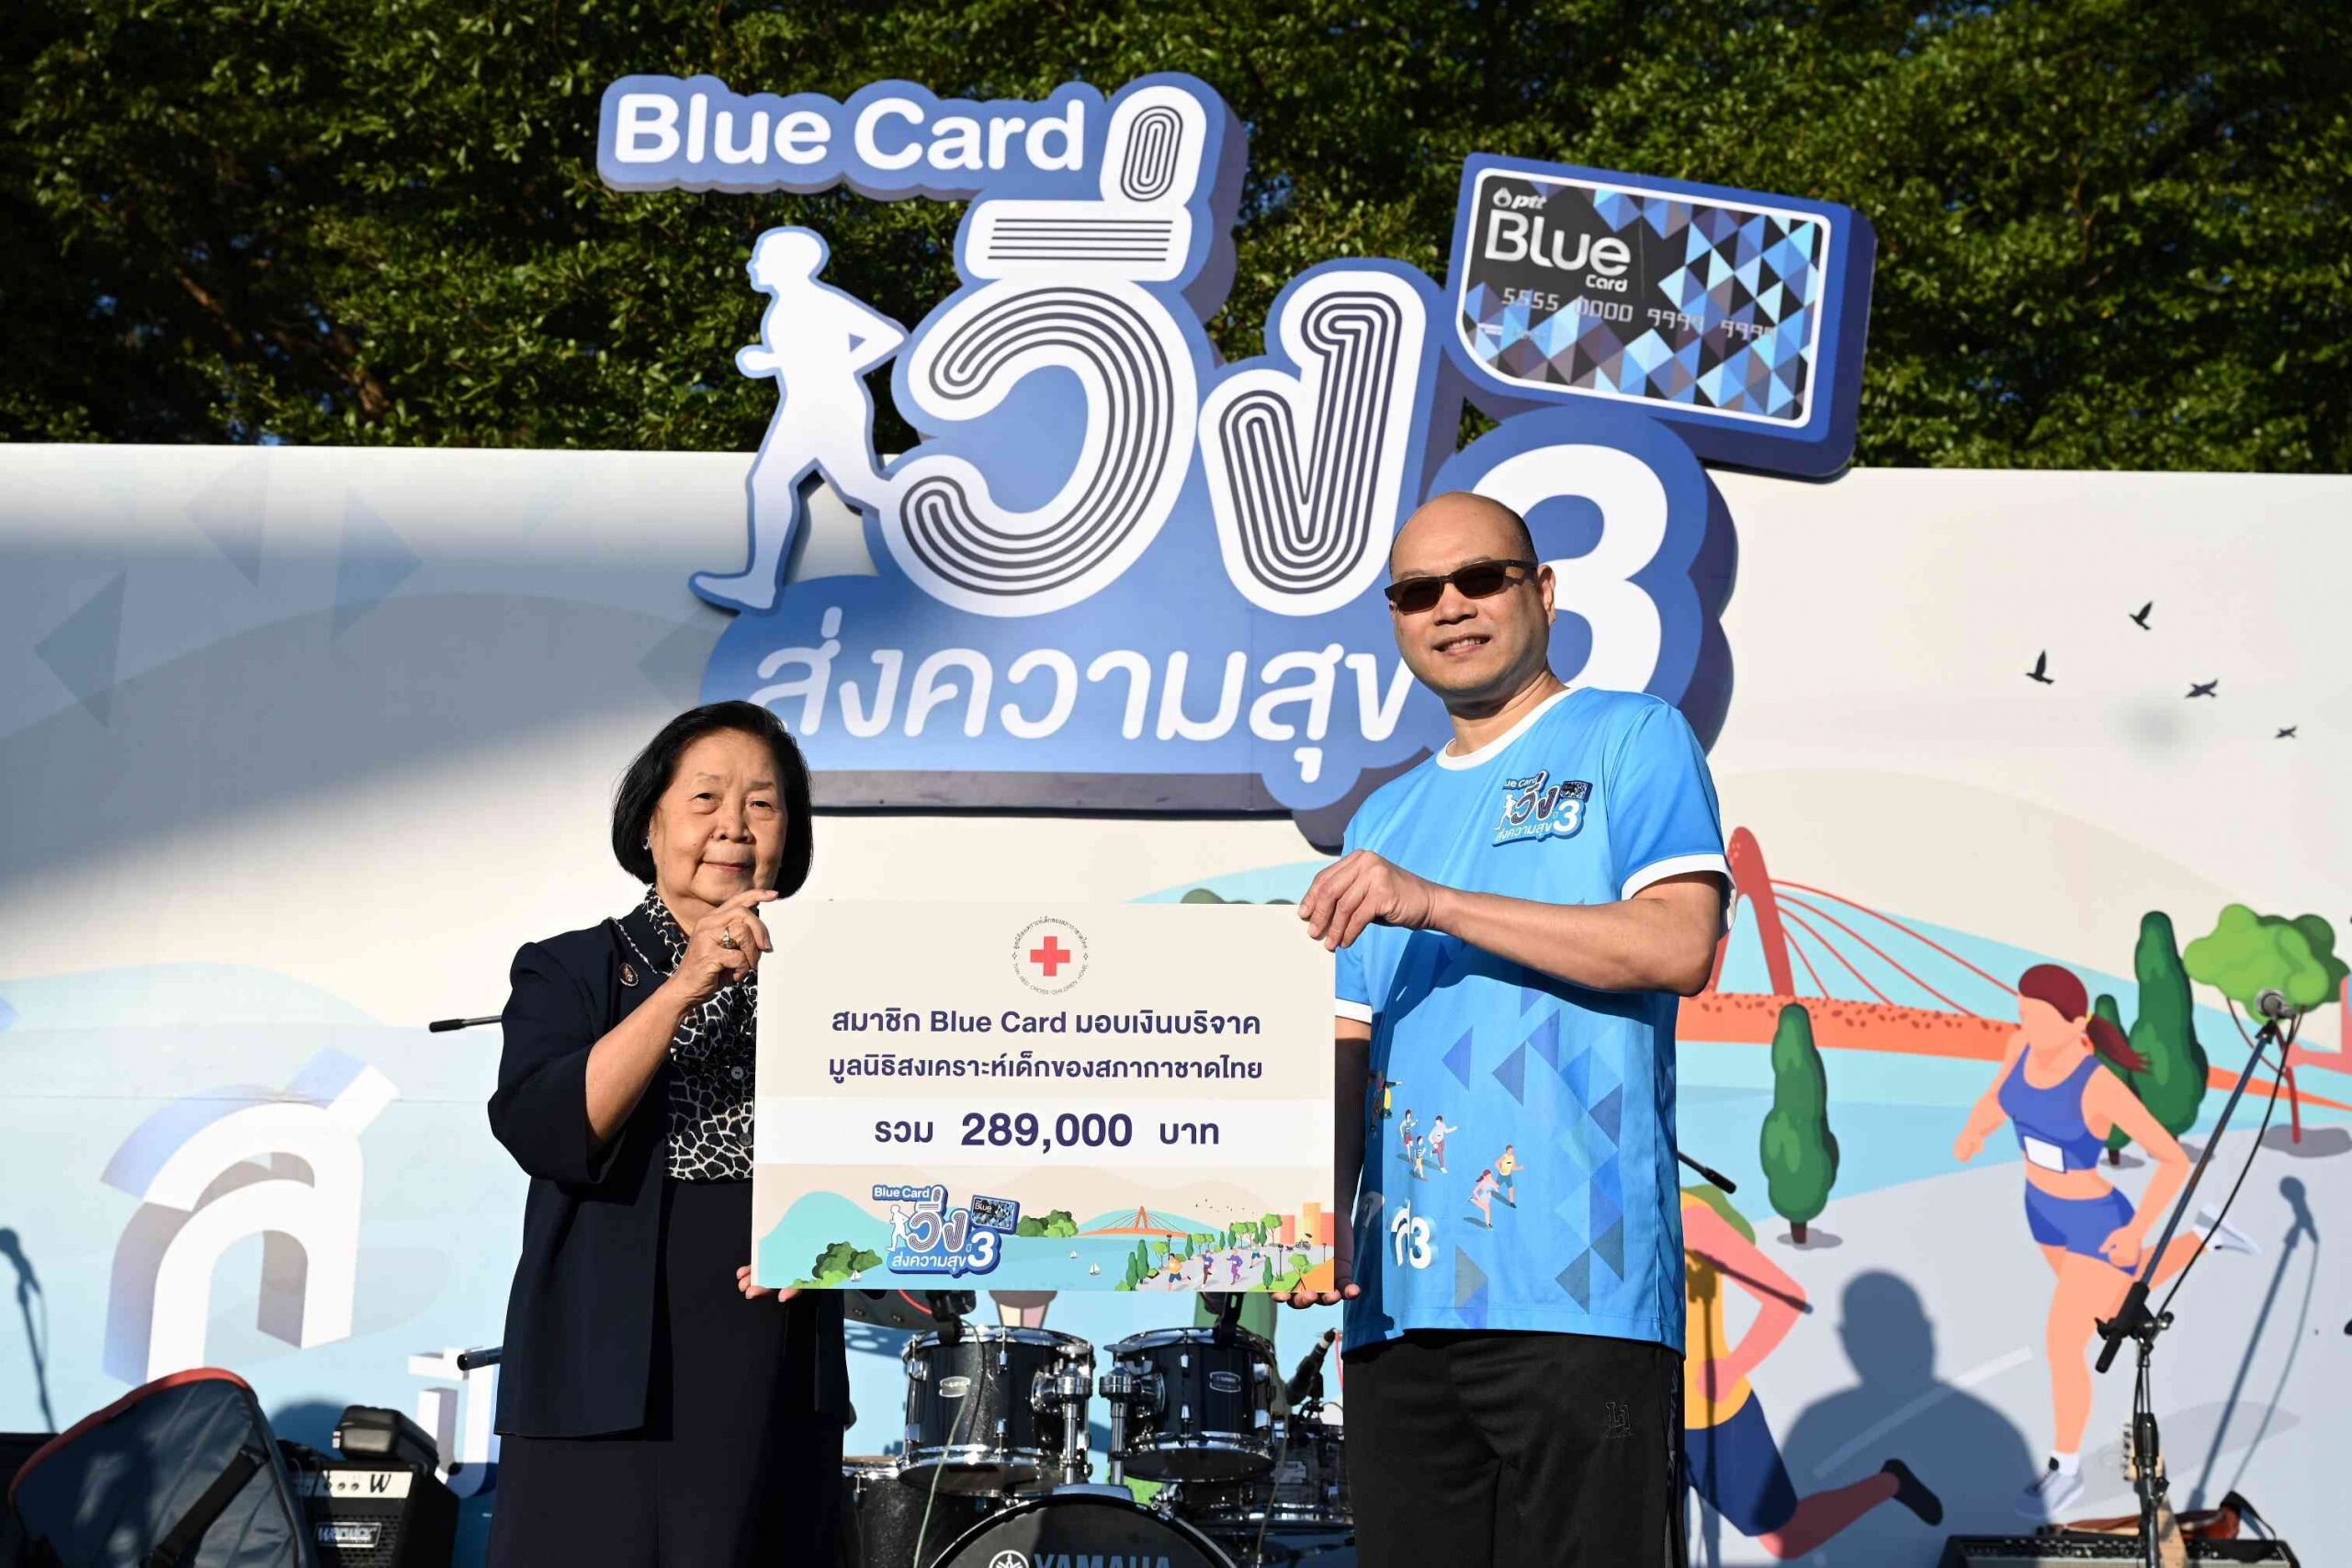 "Blue Card วิ่งส่งความสุข ปี 3" กิจกรรมการกุศลส่งท้ายปี สมทบทุนมูลนิธิสงเคราะห์เด็ก สภากาชาดไทย"